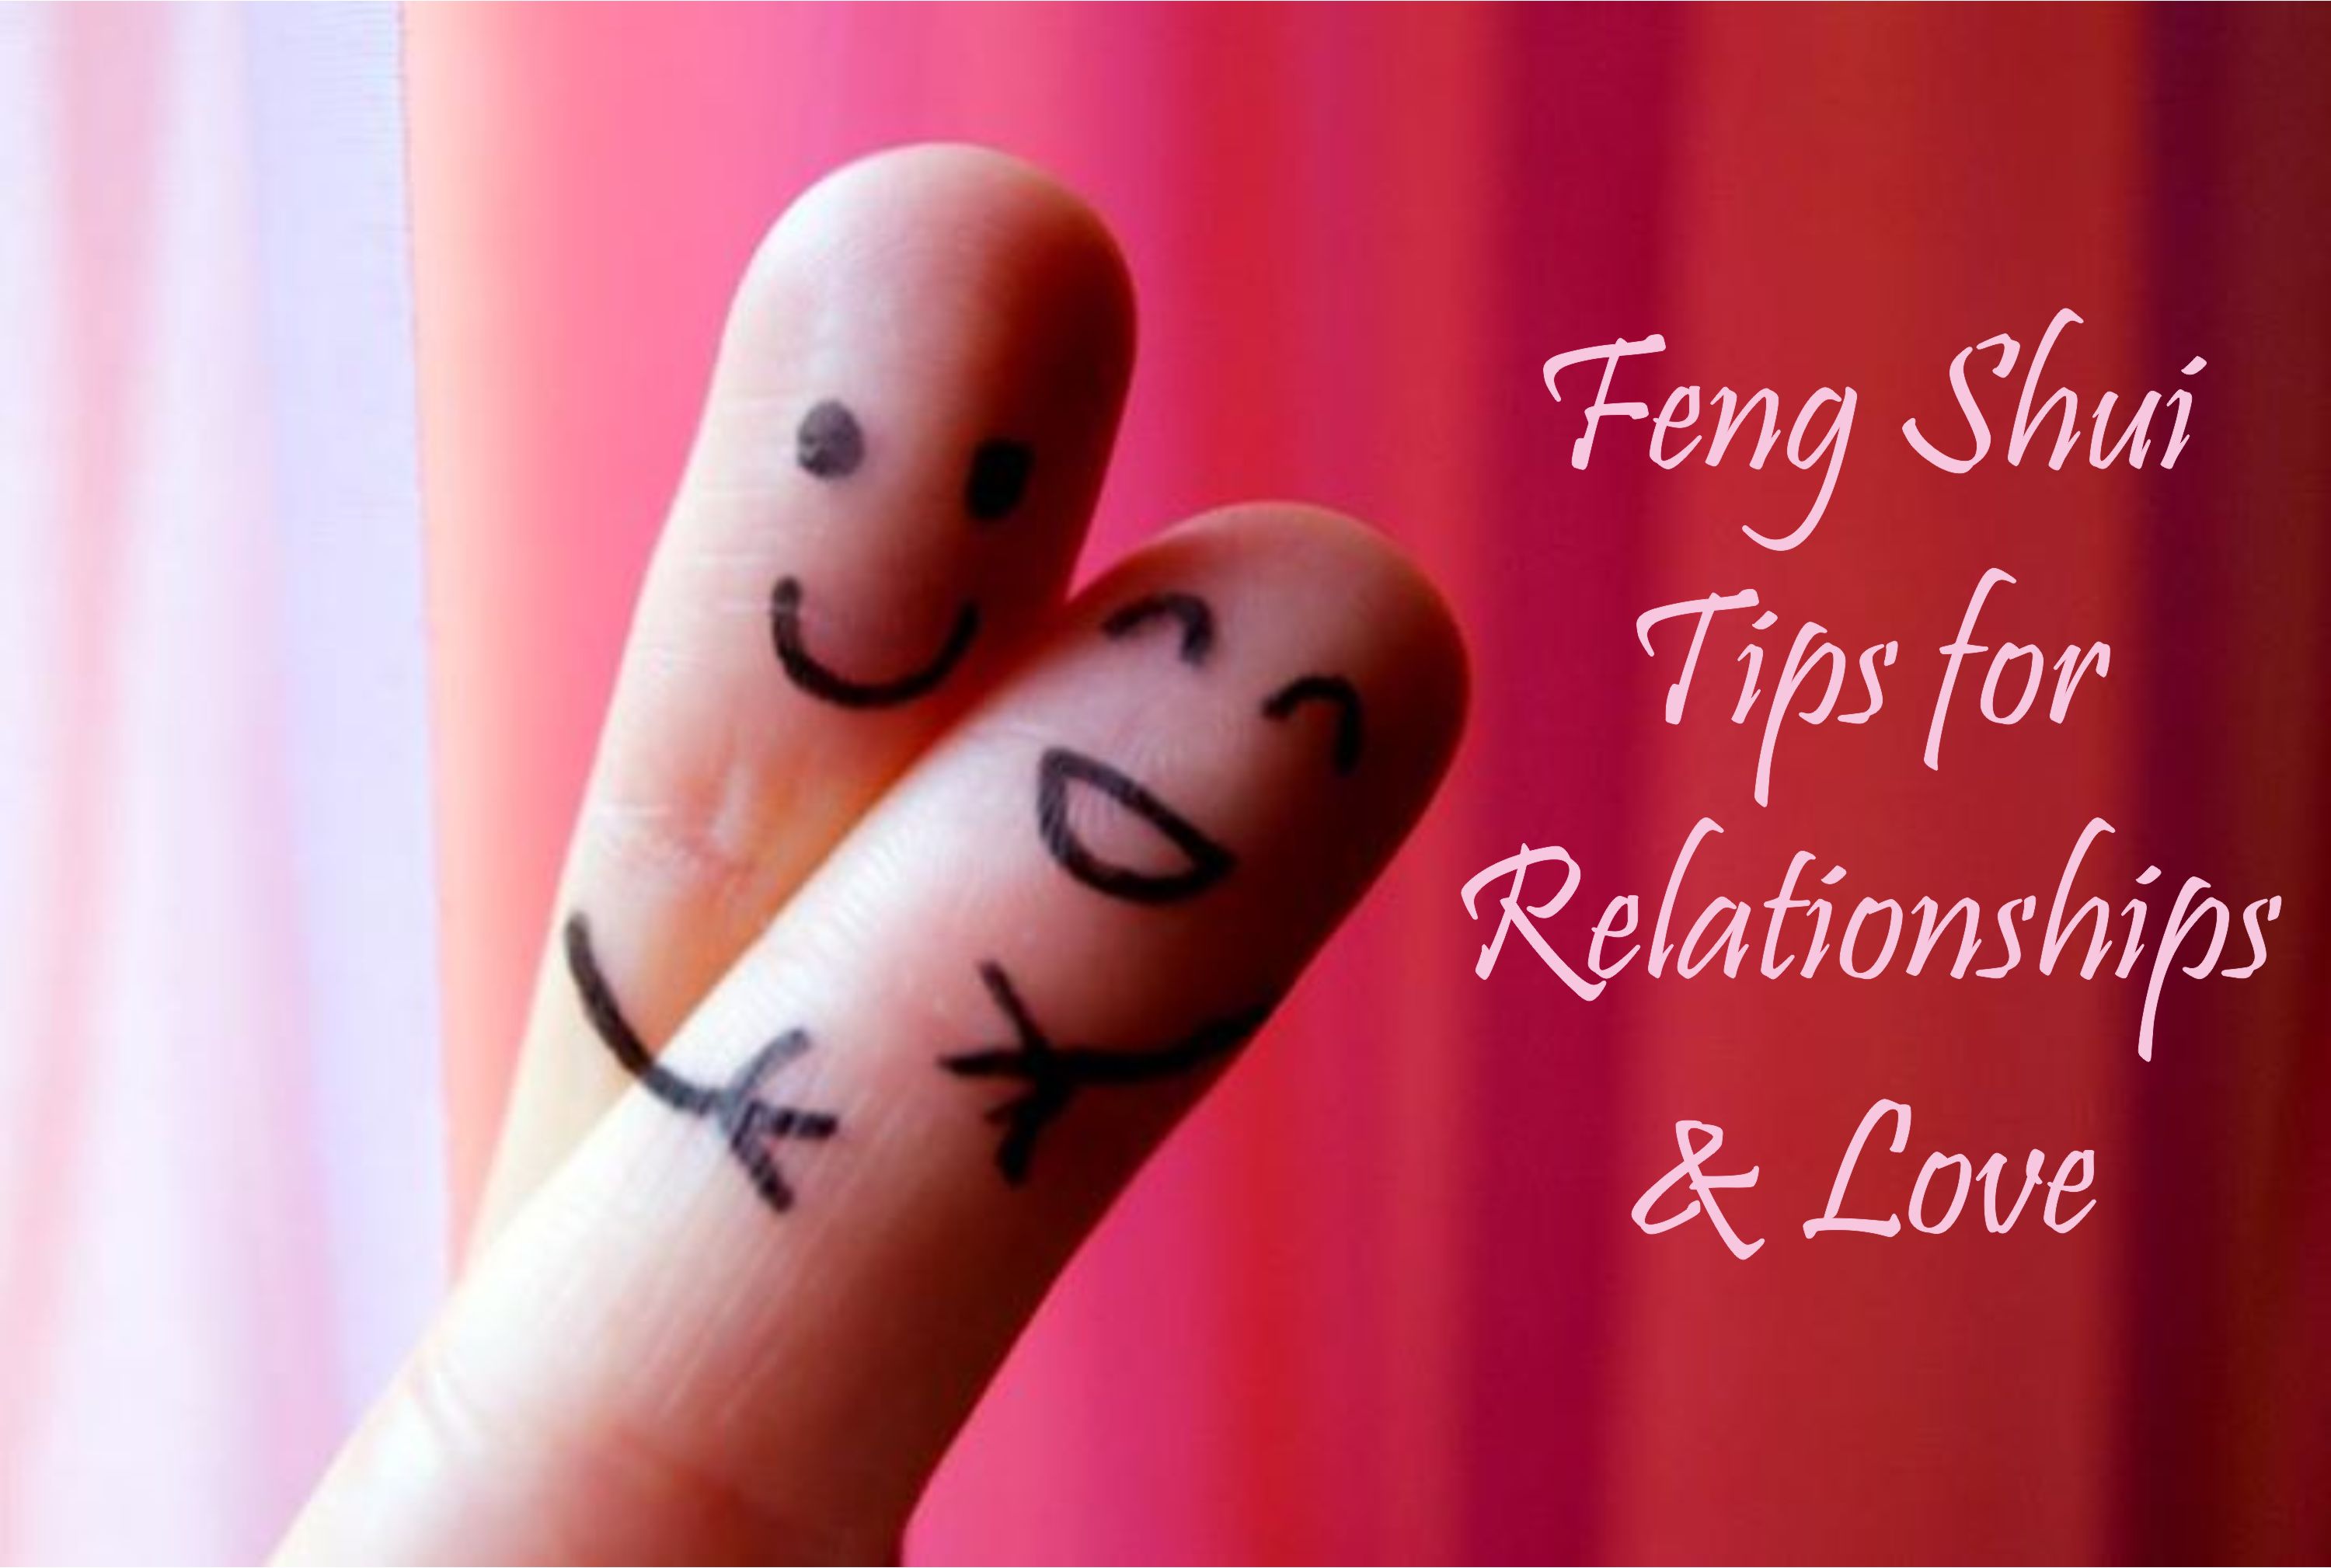 Feng Shui Tips for Relationships